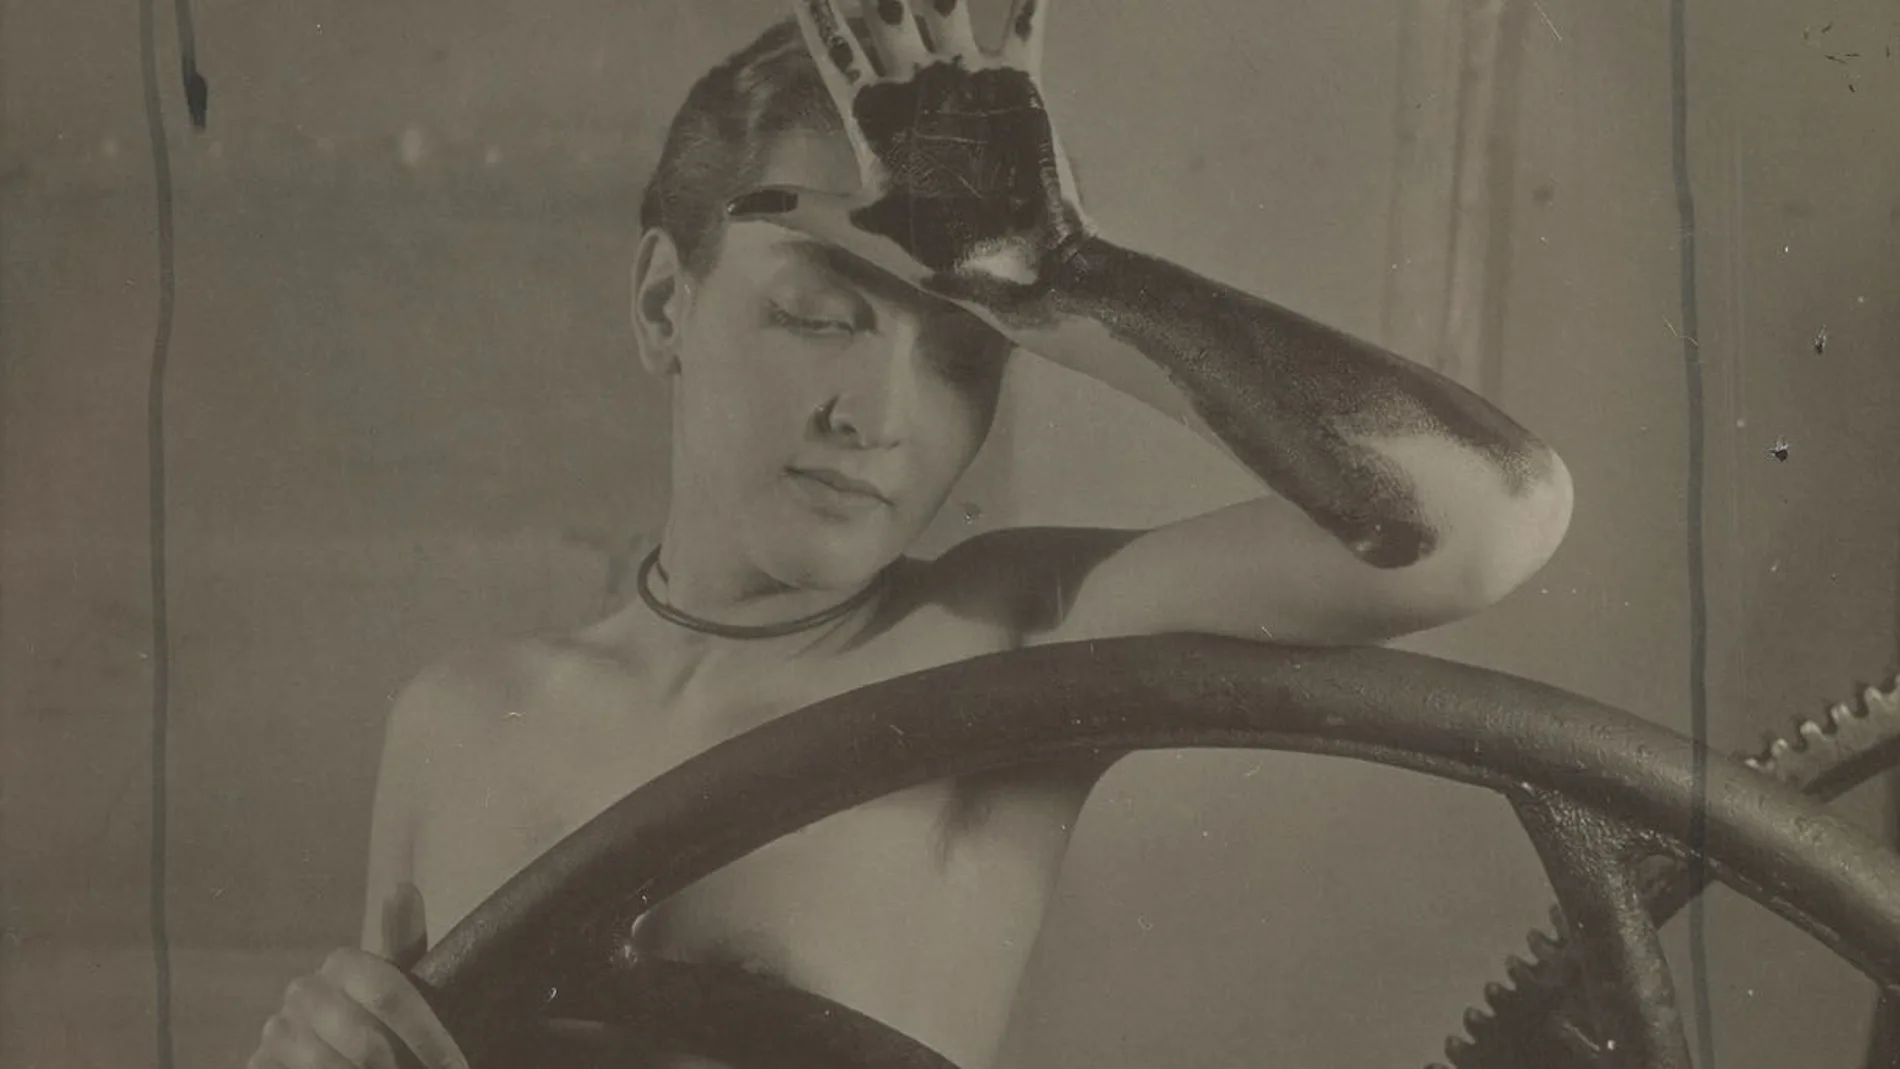 El martes, esta fotografía de Man Ray, «Erotique voilée», alcanzó en subasta un valor de 312.500 euros